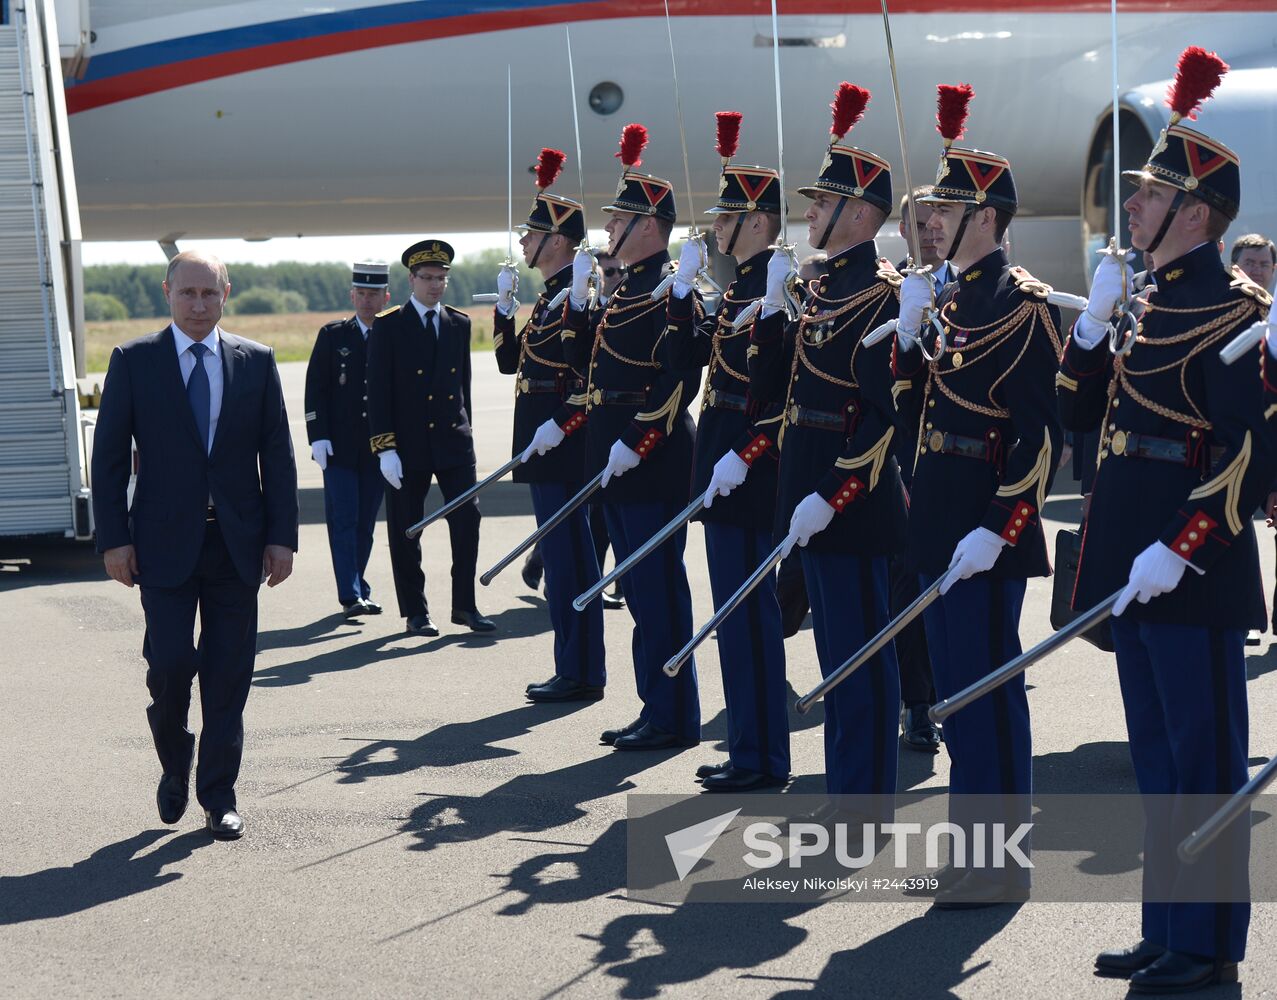 Vladimir Putin visits France